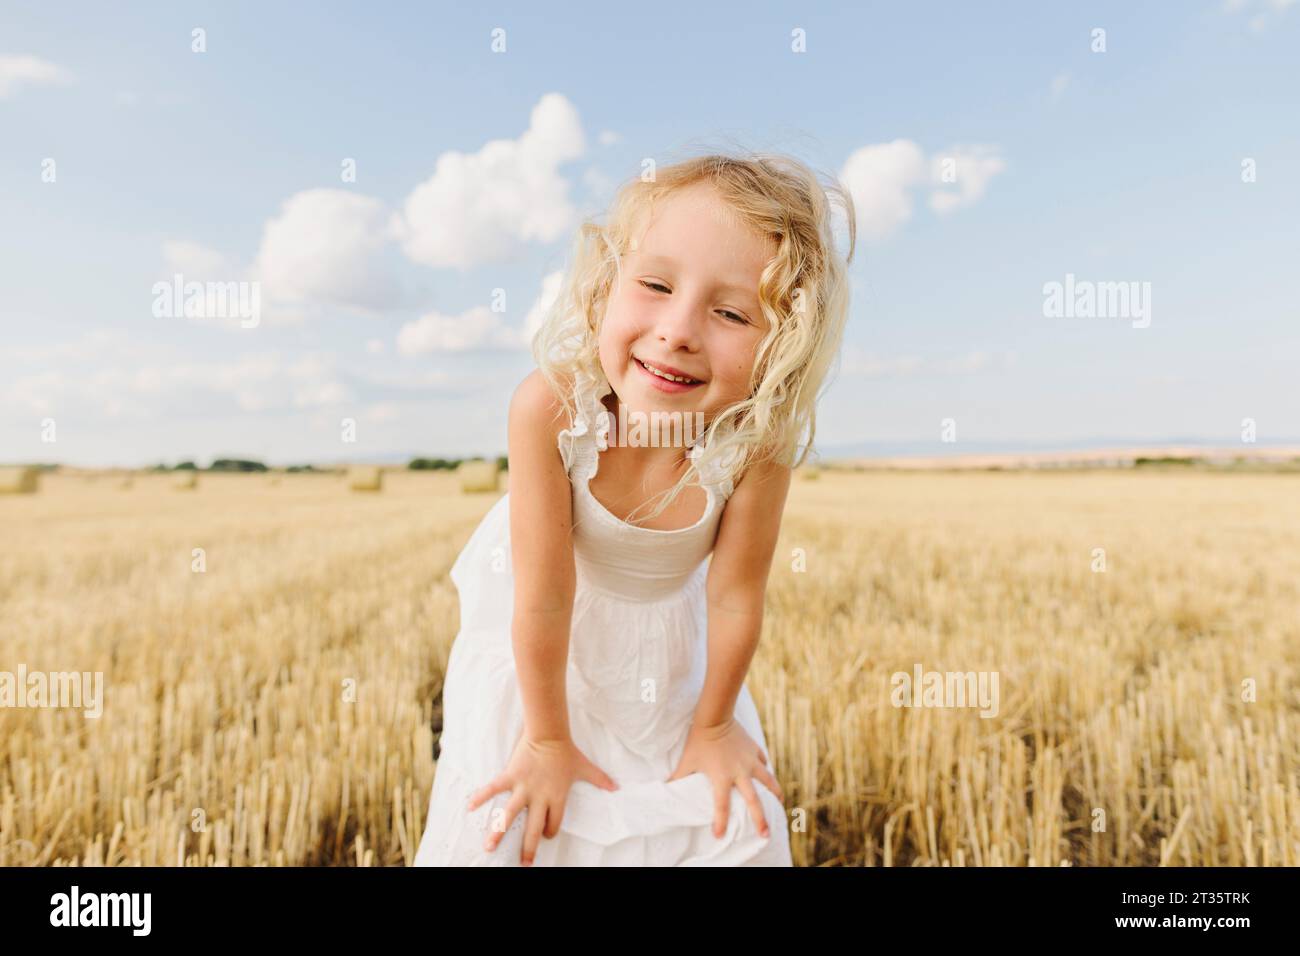 Glückliches blondes Mädchen, das auf einem Stoppelfeld steht und Hände auf den Knien hat Stockfoto